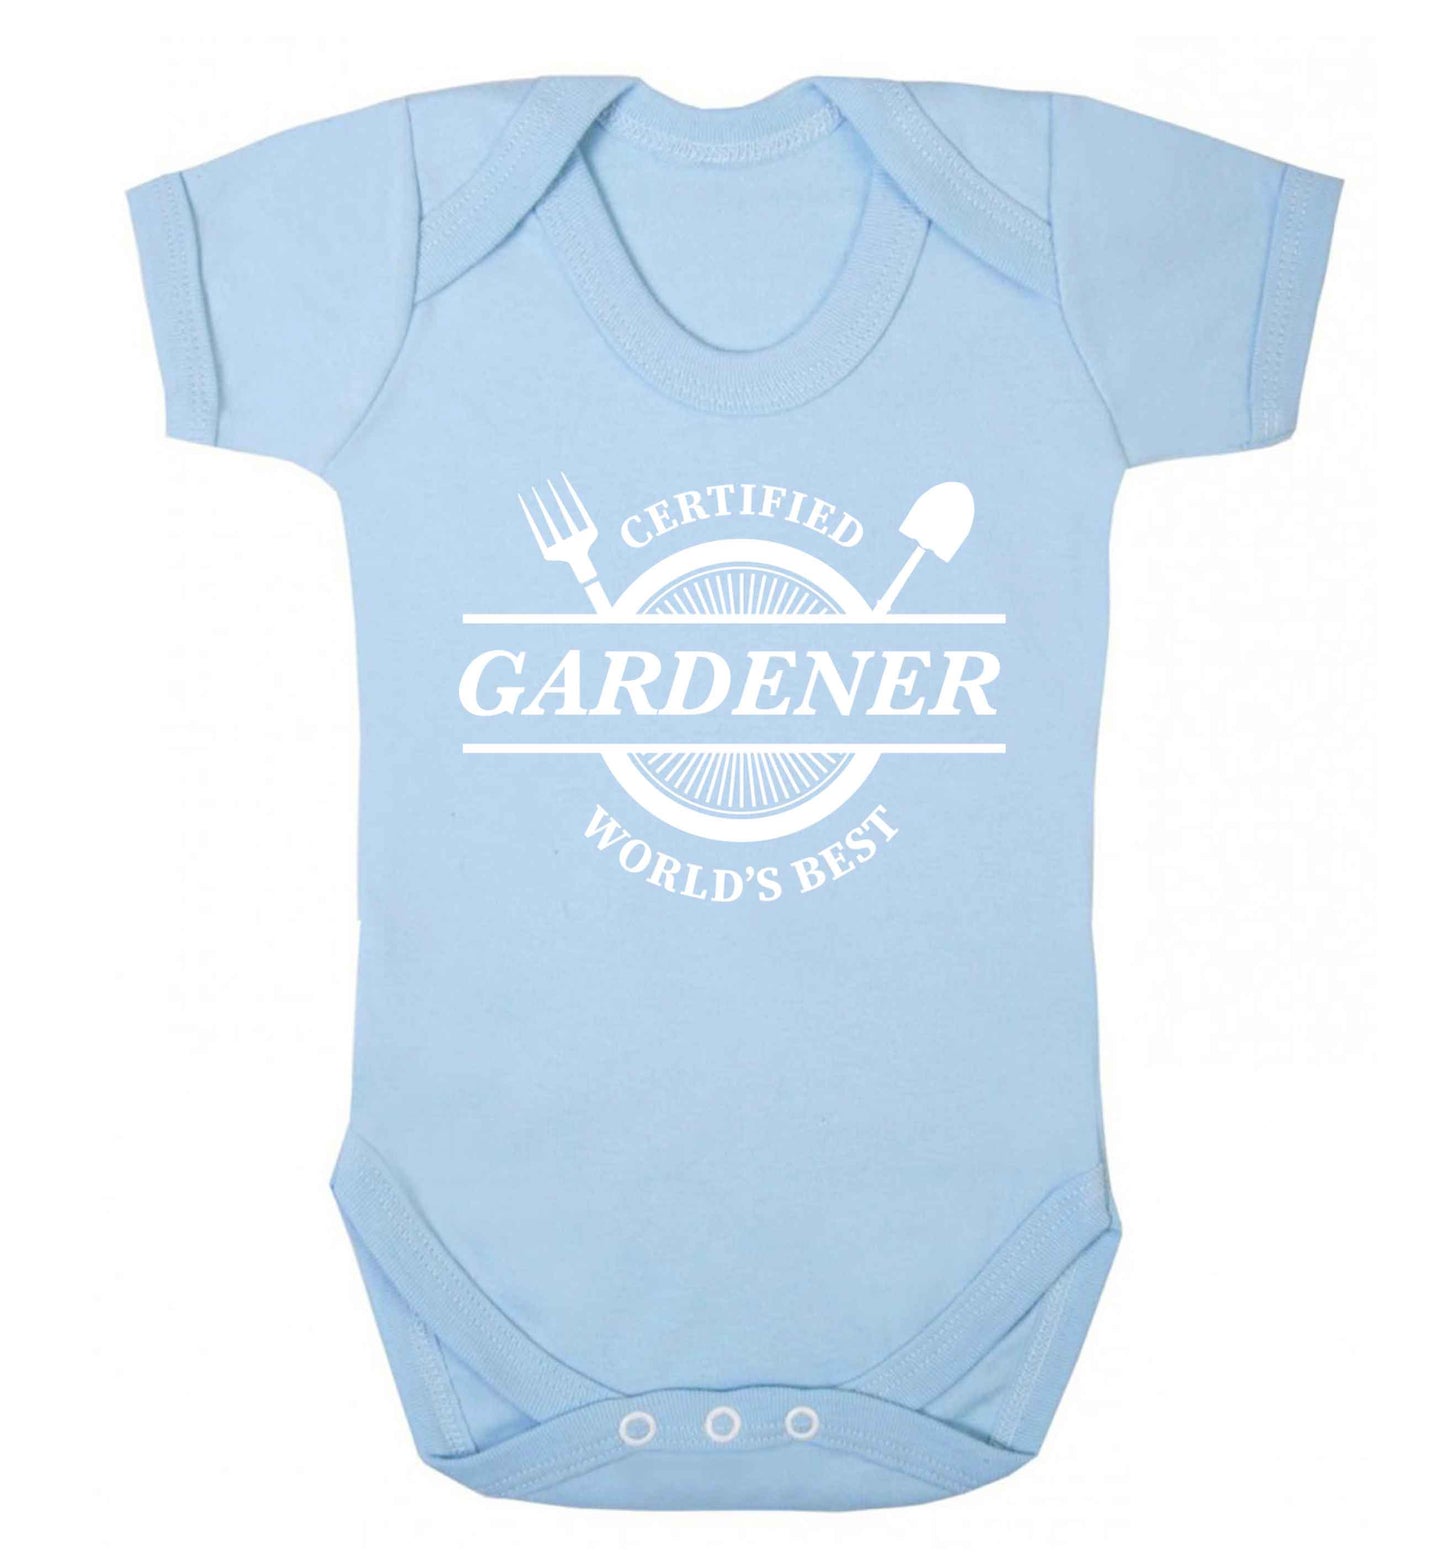 Certified gardener worlds best Baby Vest pale blue 18-24 months